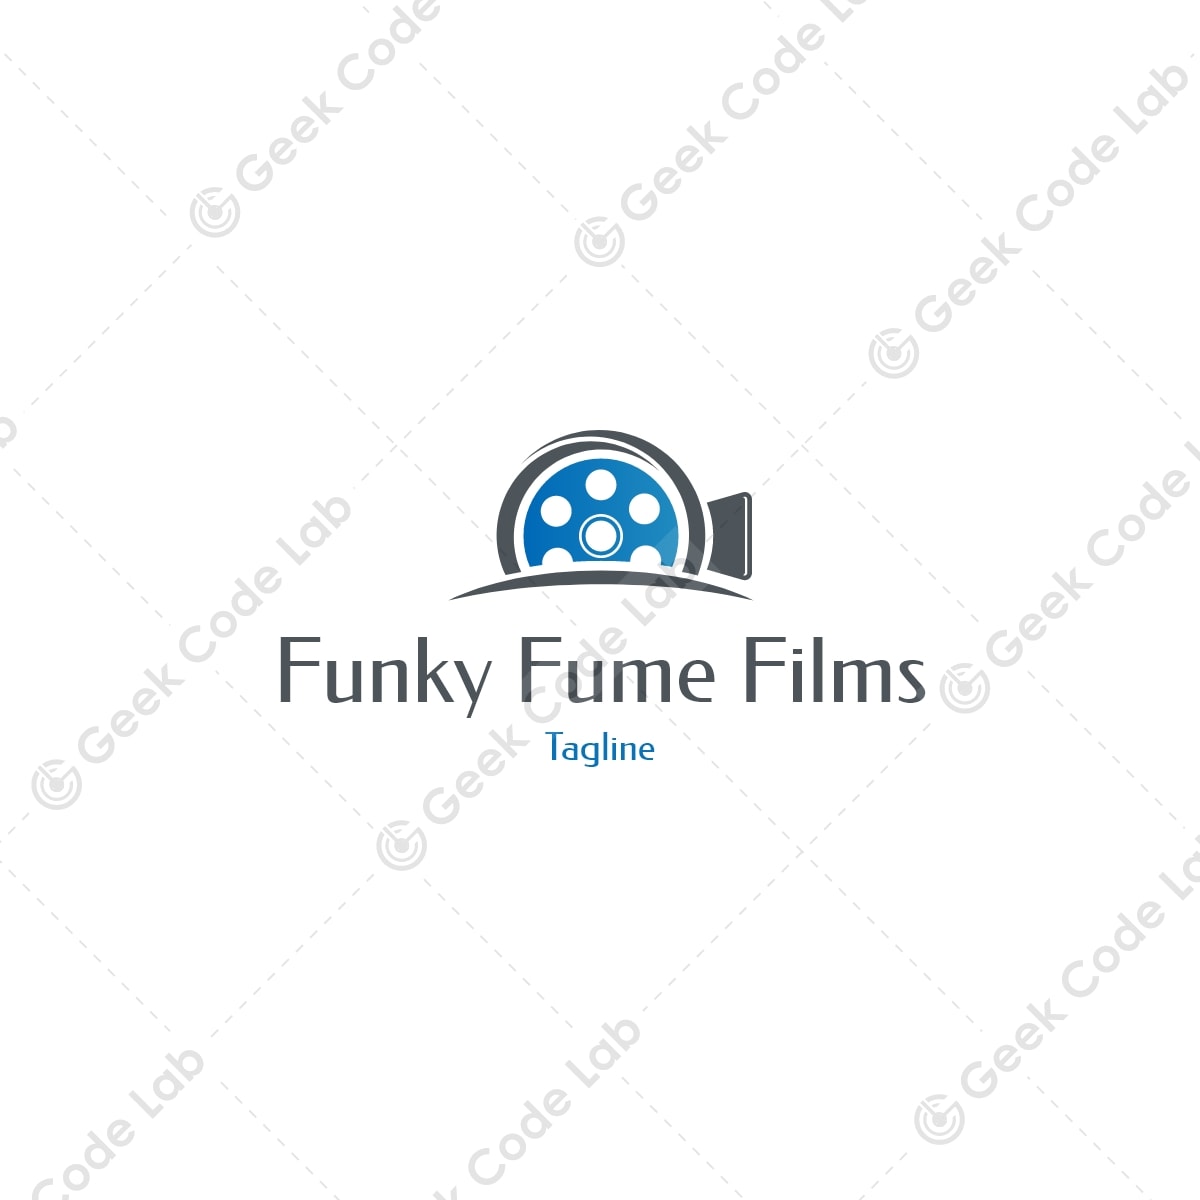 Funky Fume Films